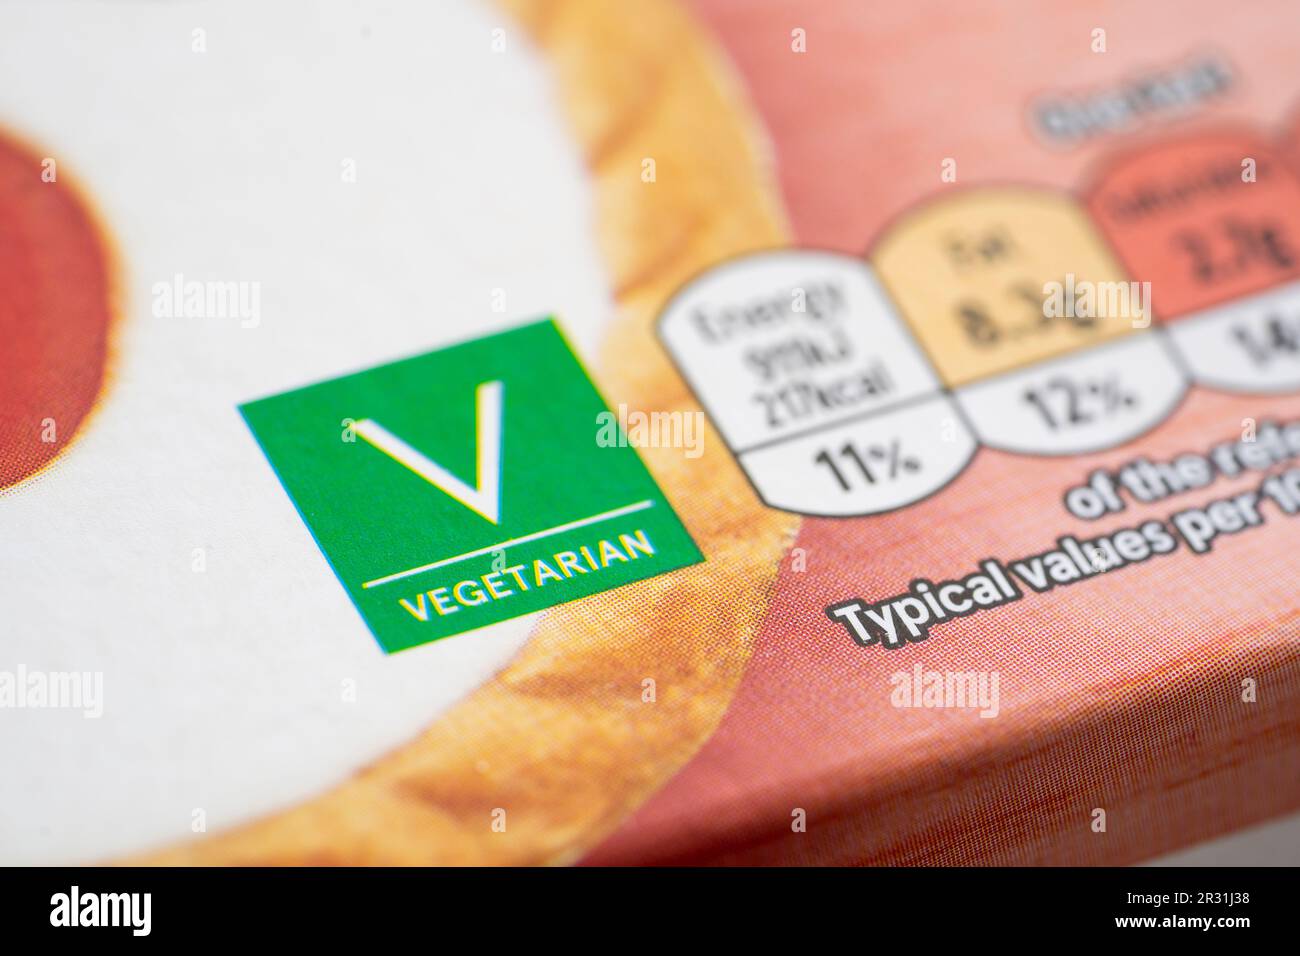 Etikett auf der Verpackungsvorderseite für vegetarisches Essen auf Tesco Eigenmarke Cherry bakewell Torts, England. Konzept: Vegetarismus, vegetarische Ernährung, Lebensmittelkennzeichnung Stockfoto